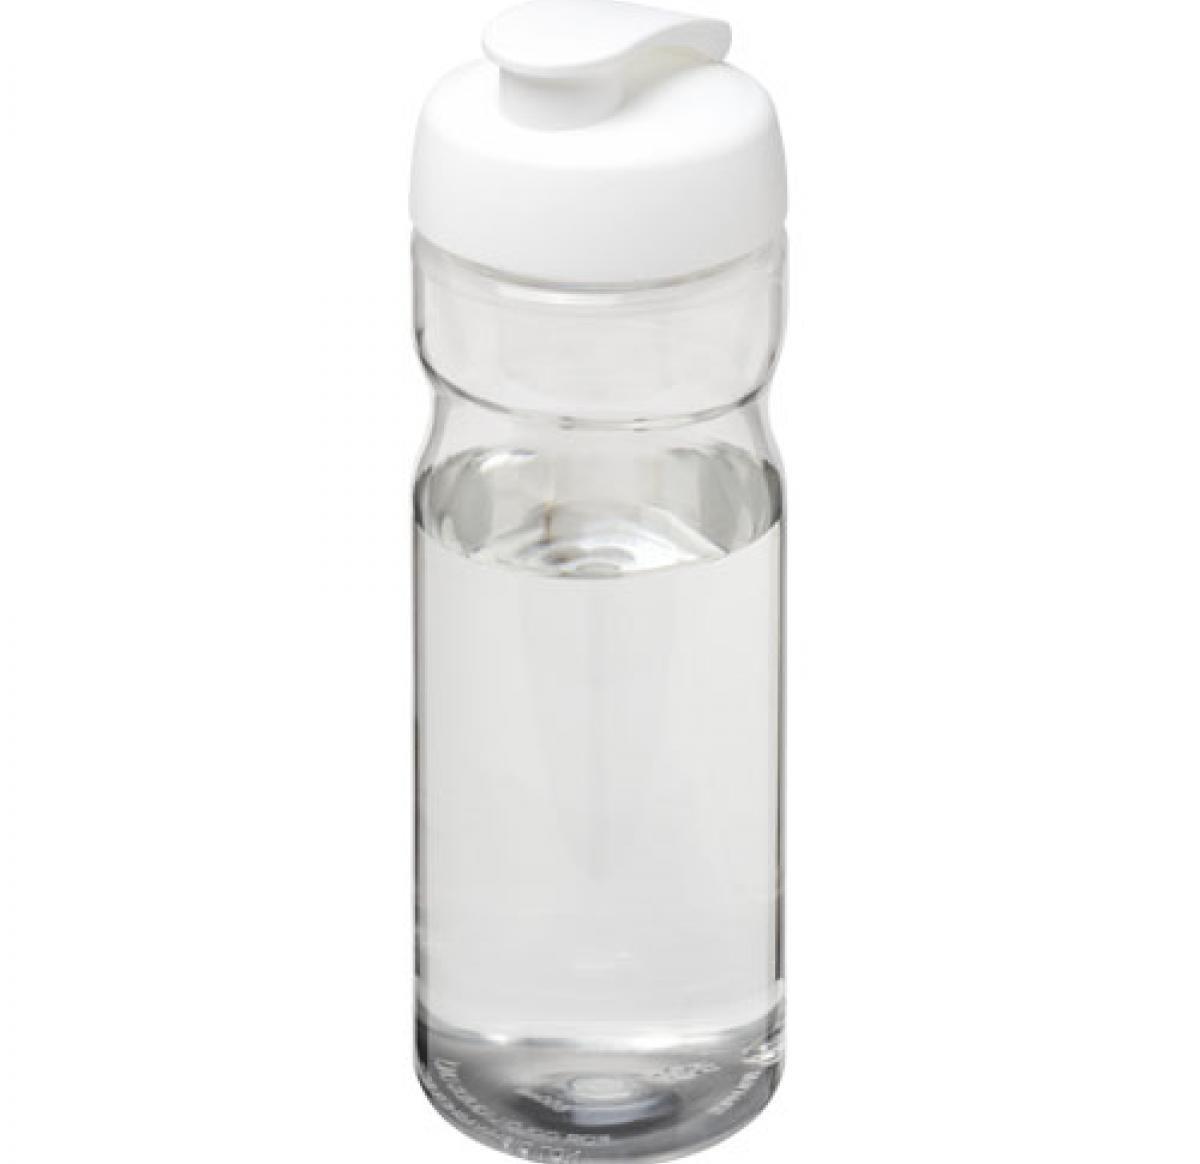 H2O Base® 650 ml flip lid sport bottle